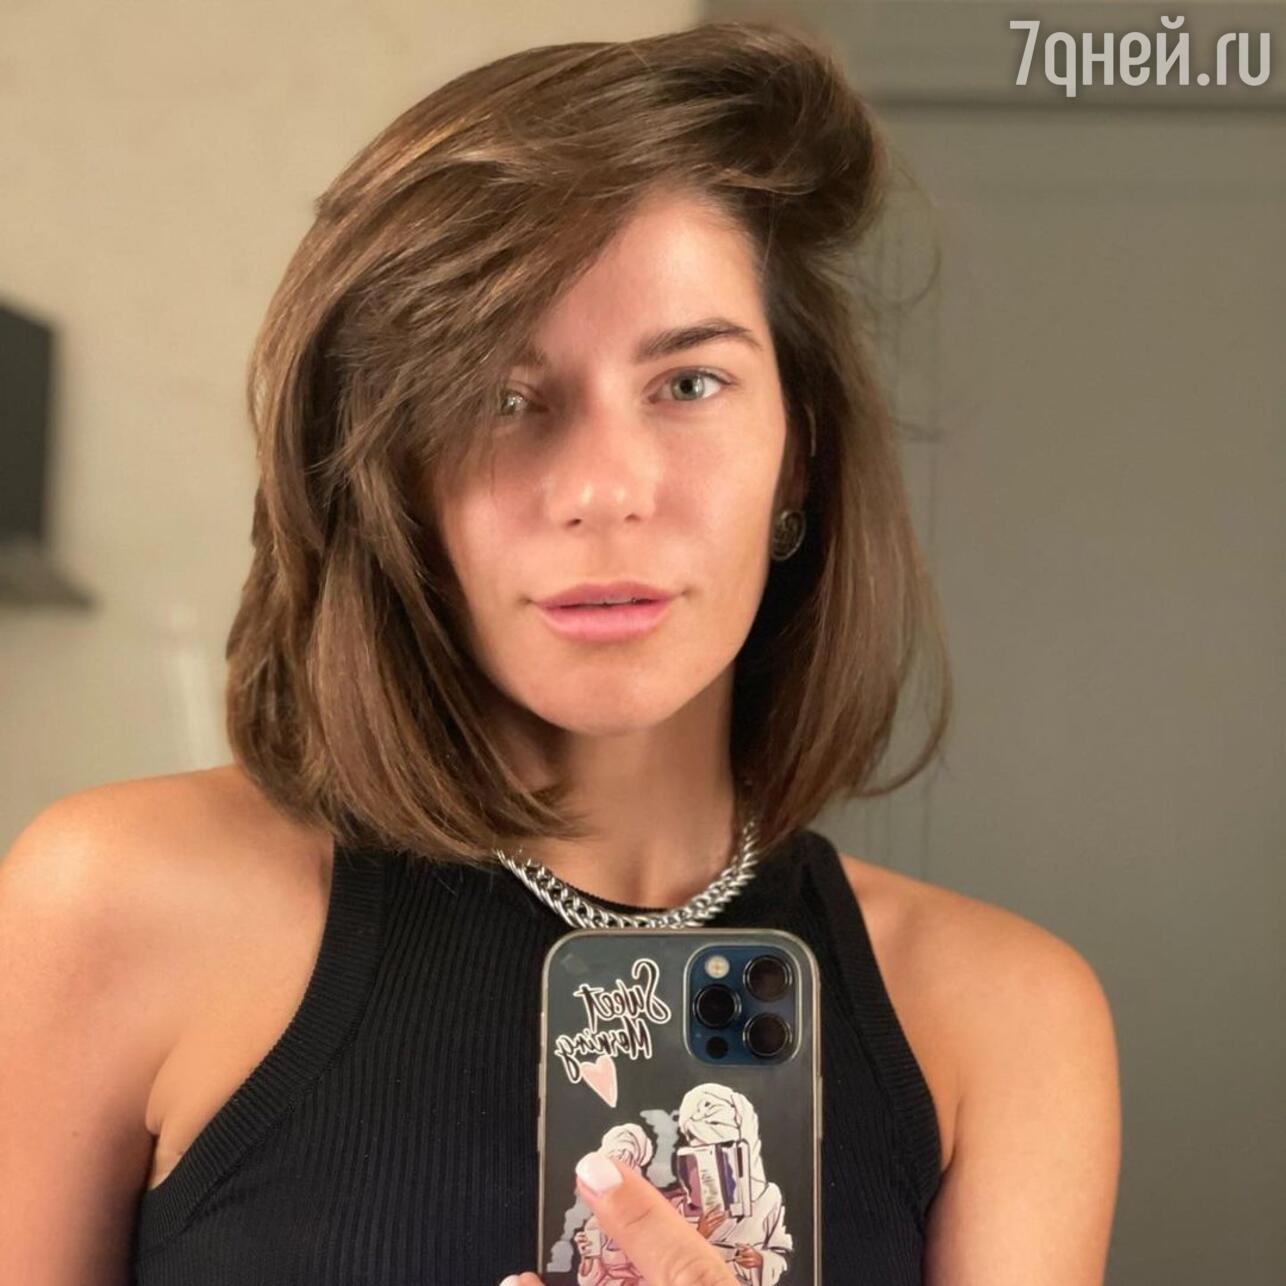 Было стыдно»: Екатерина Волкова сделала признание об изнасиловании -  7Дней.ру